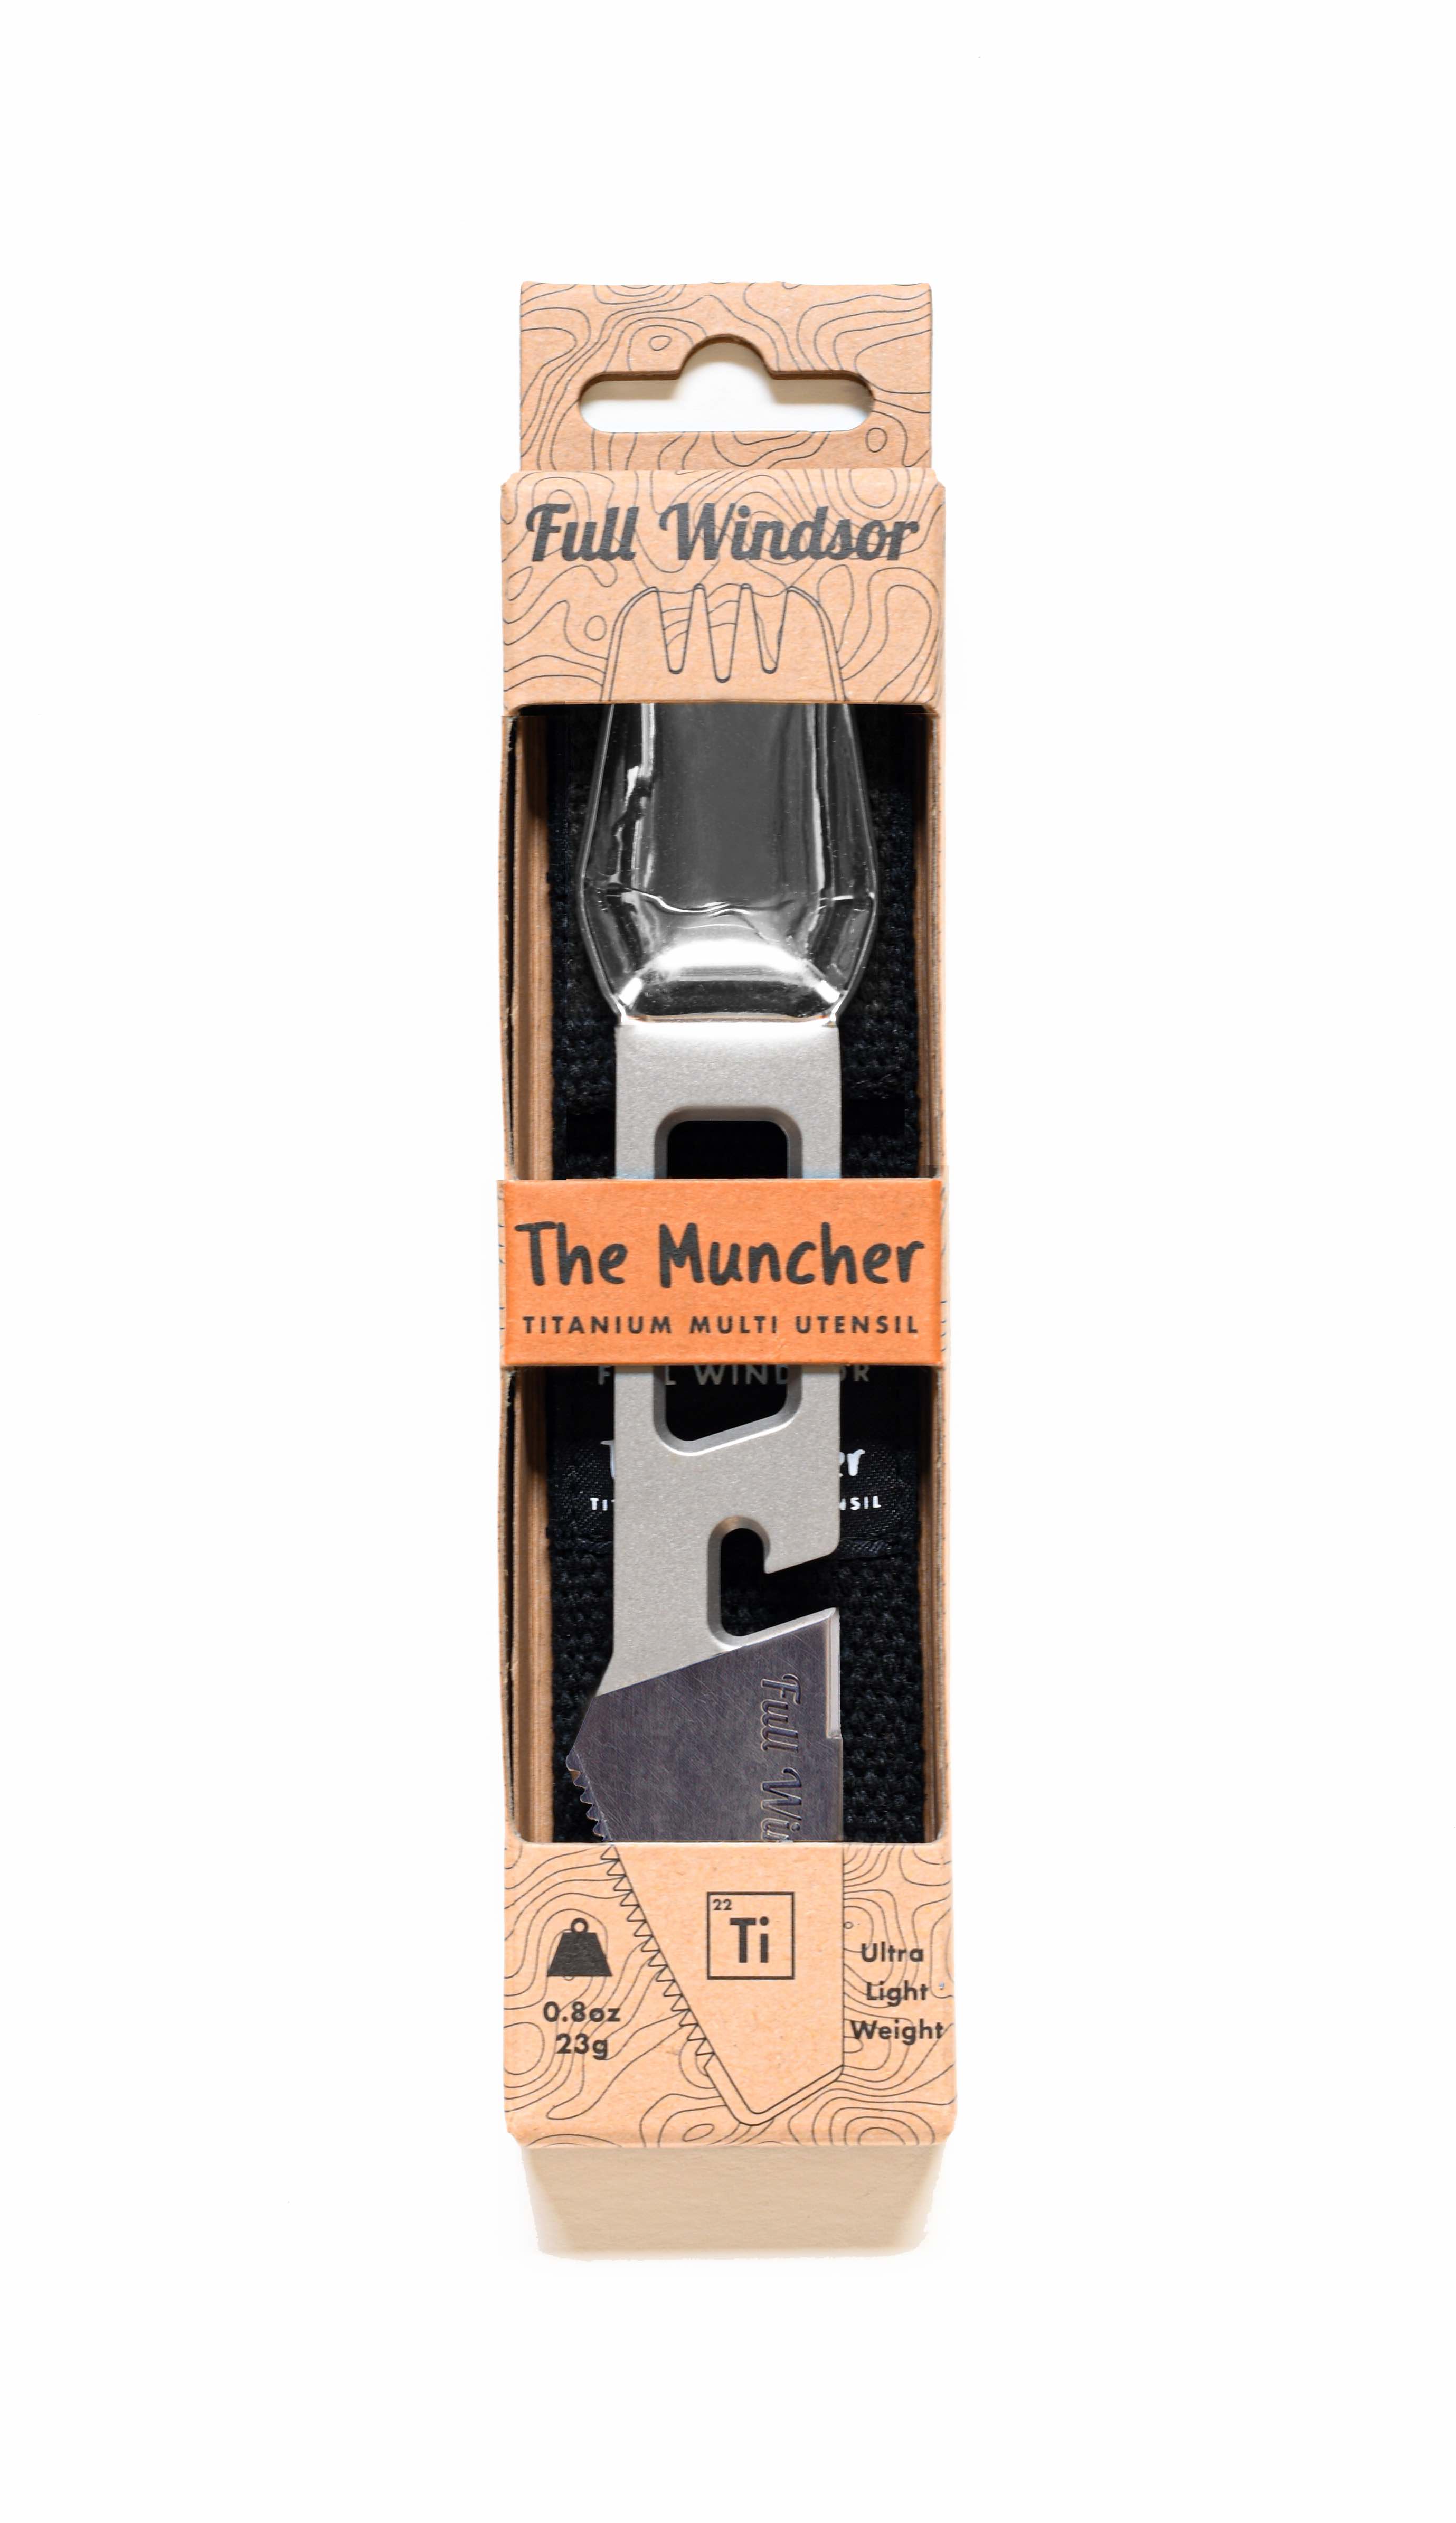 Full-Windsor Muncher